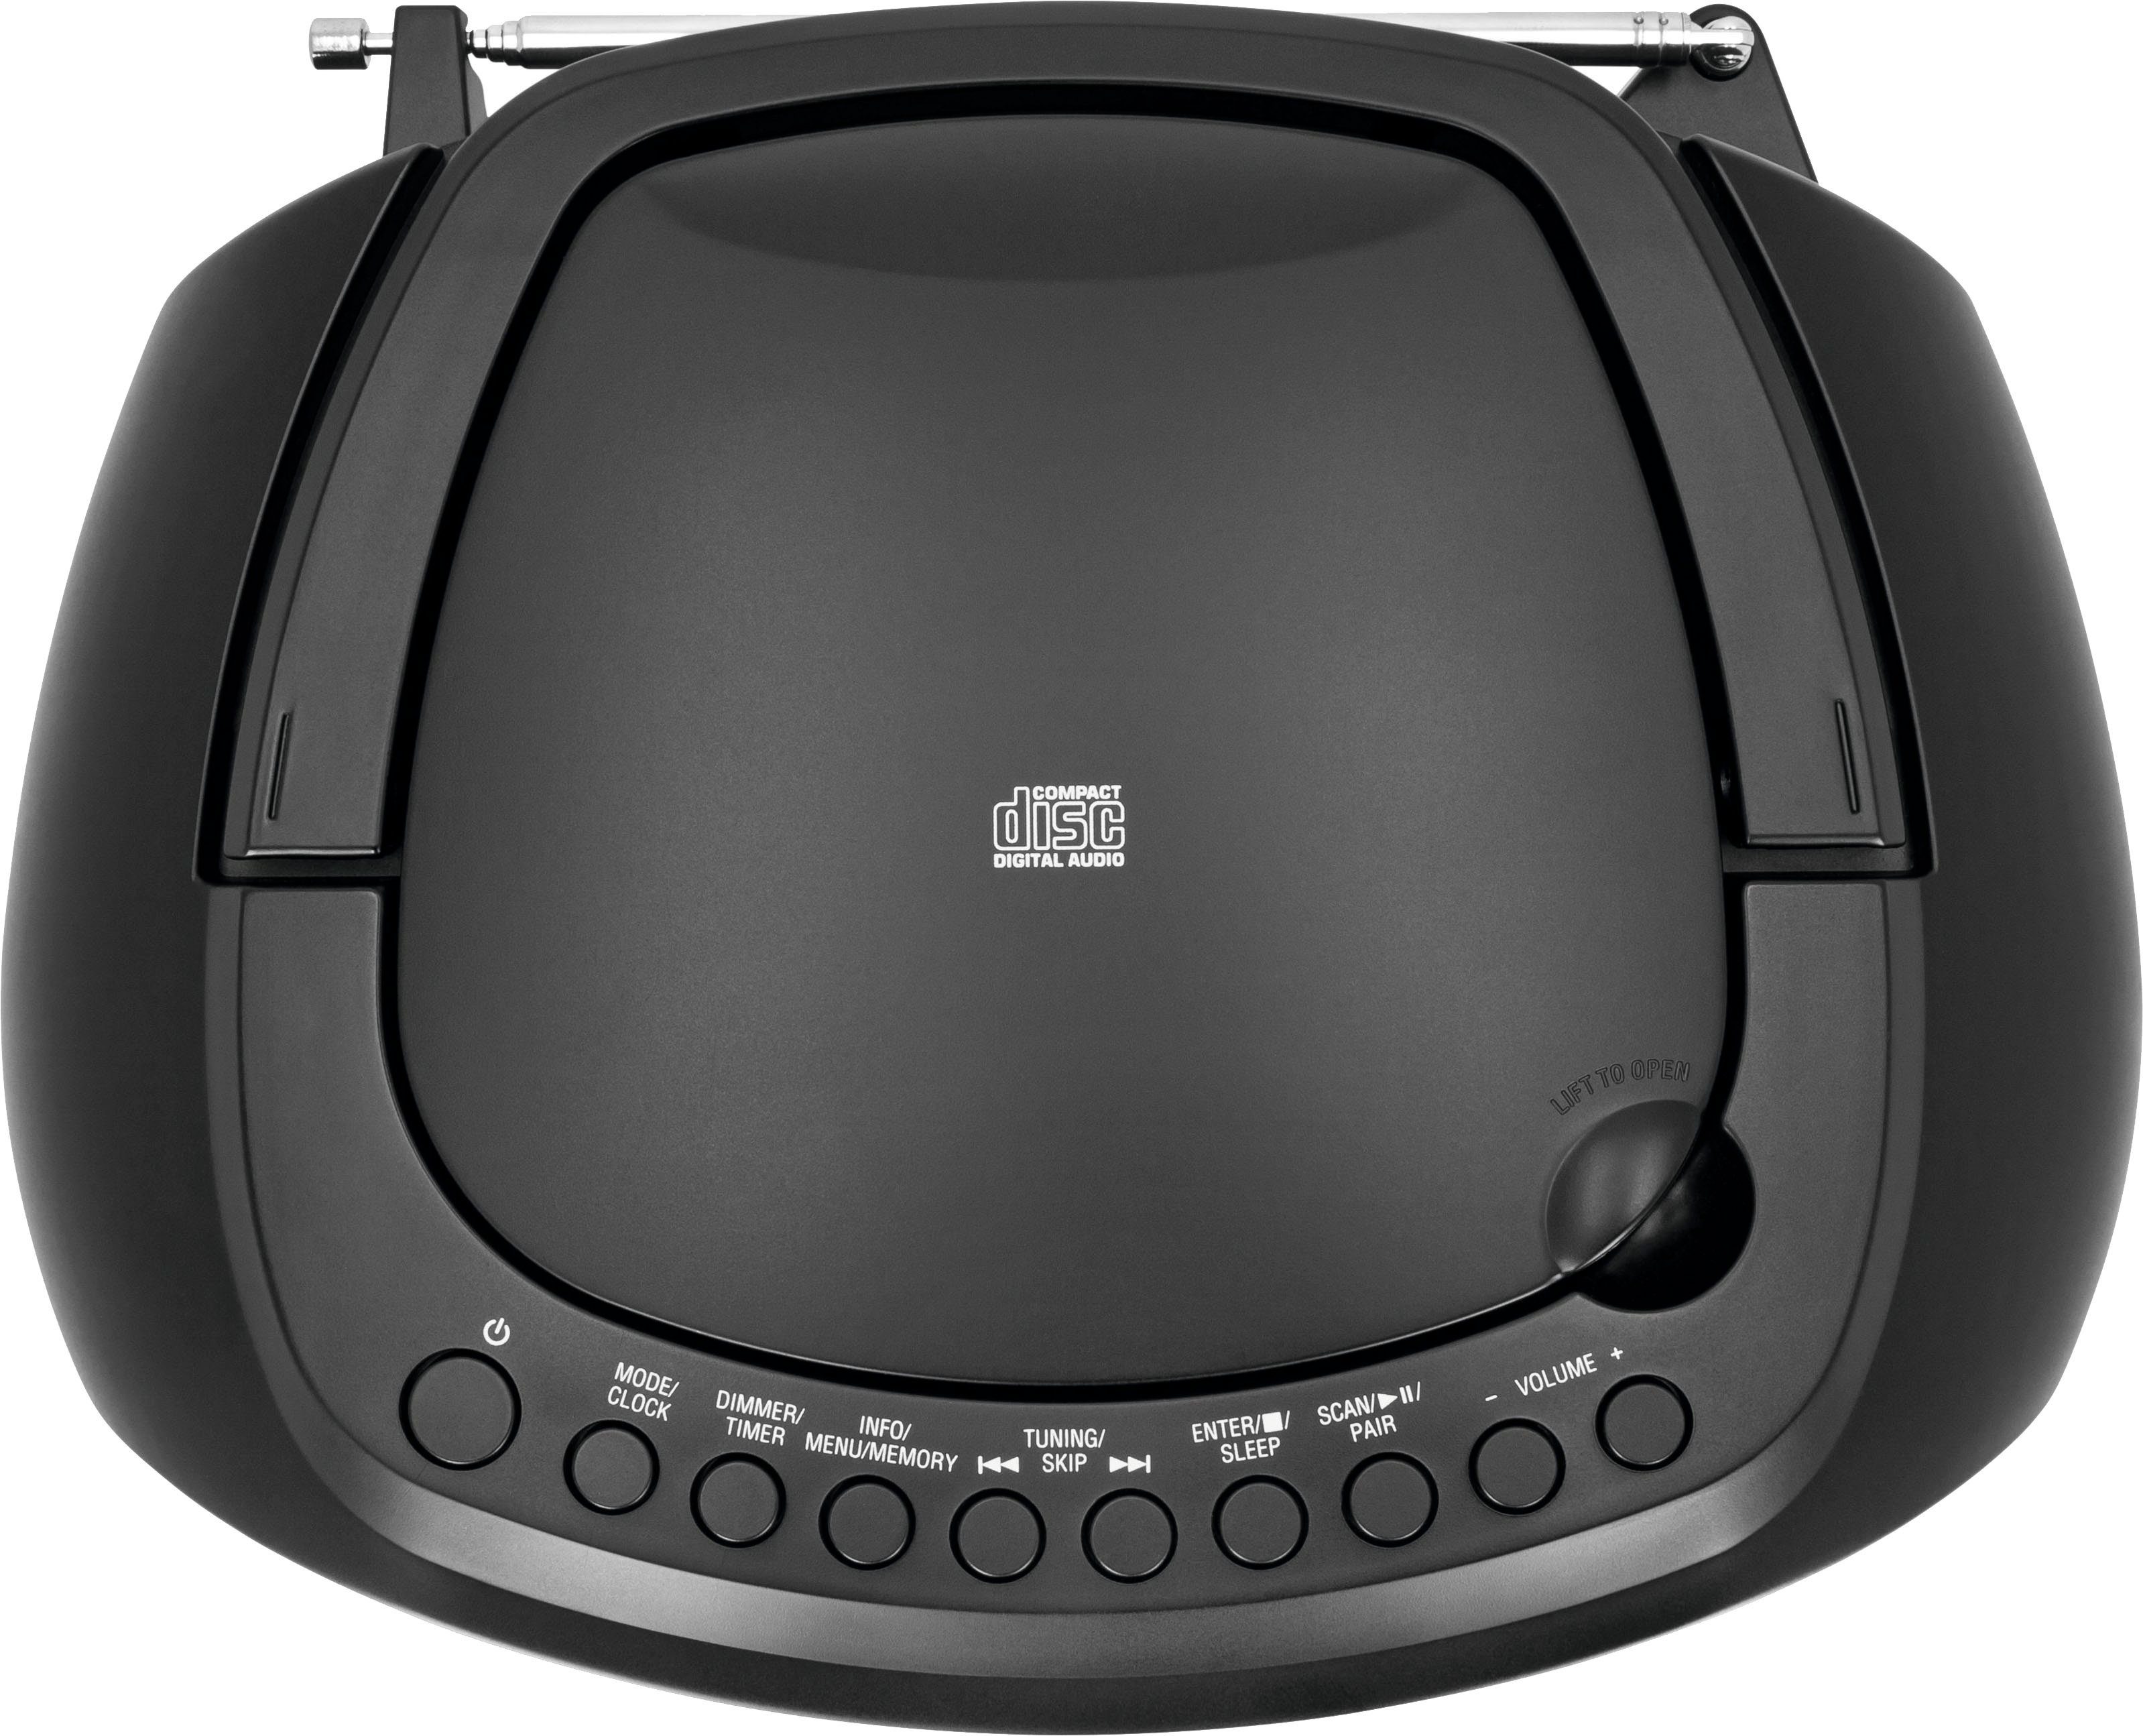 Digitradio Stereo- (Digitalradio Batteriebetrieb (DAB), DAB+, UKW, 1990 möglich) Bluetooth, schwarz mit USB, TechniSat CD-Player, FM-Tuner, Boombox